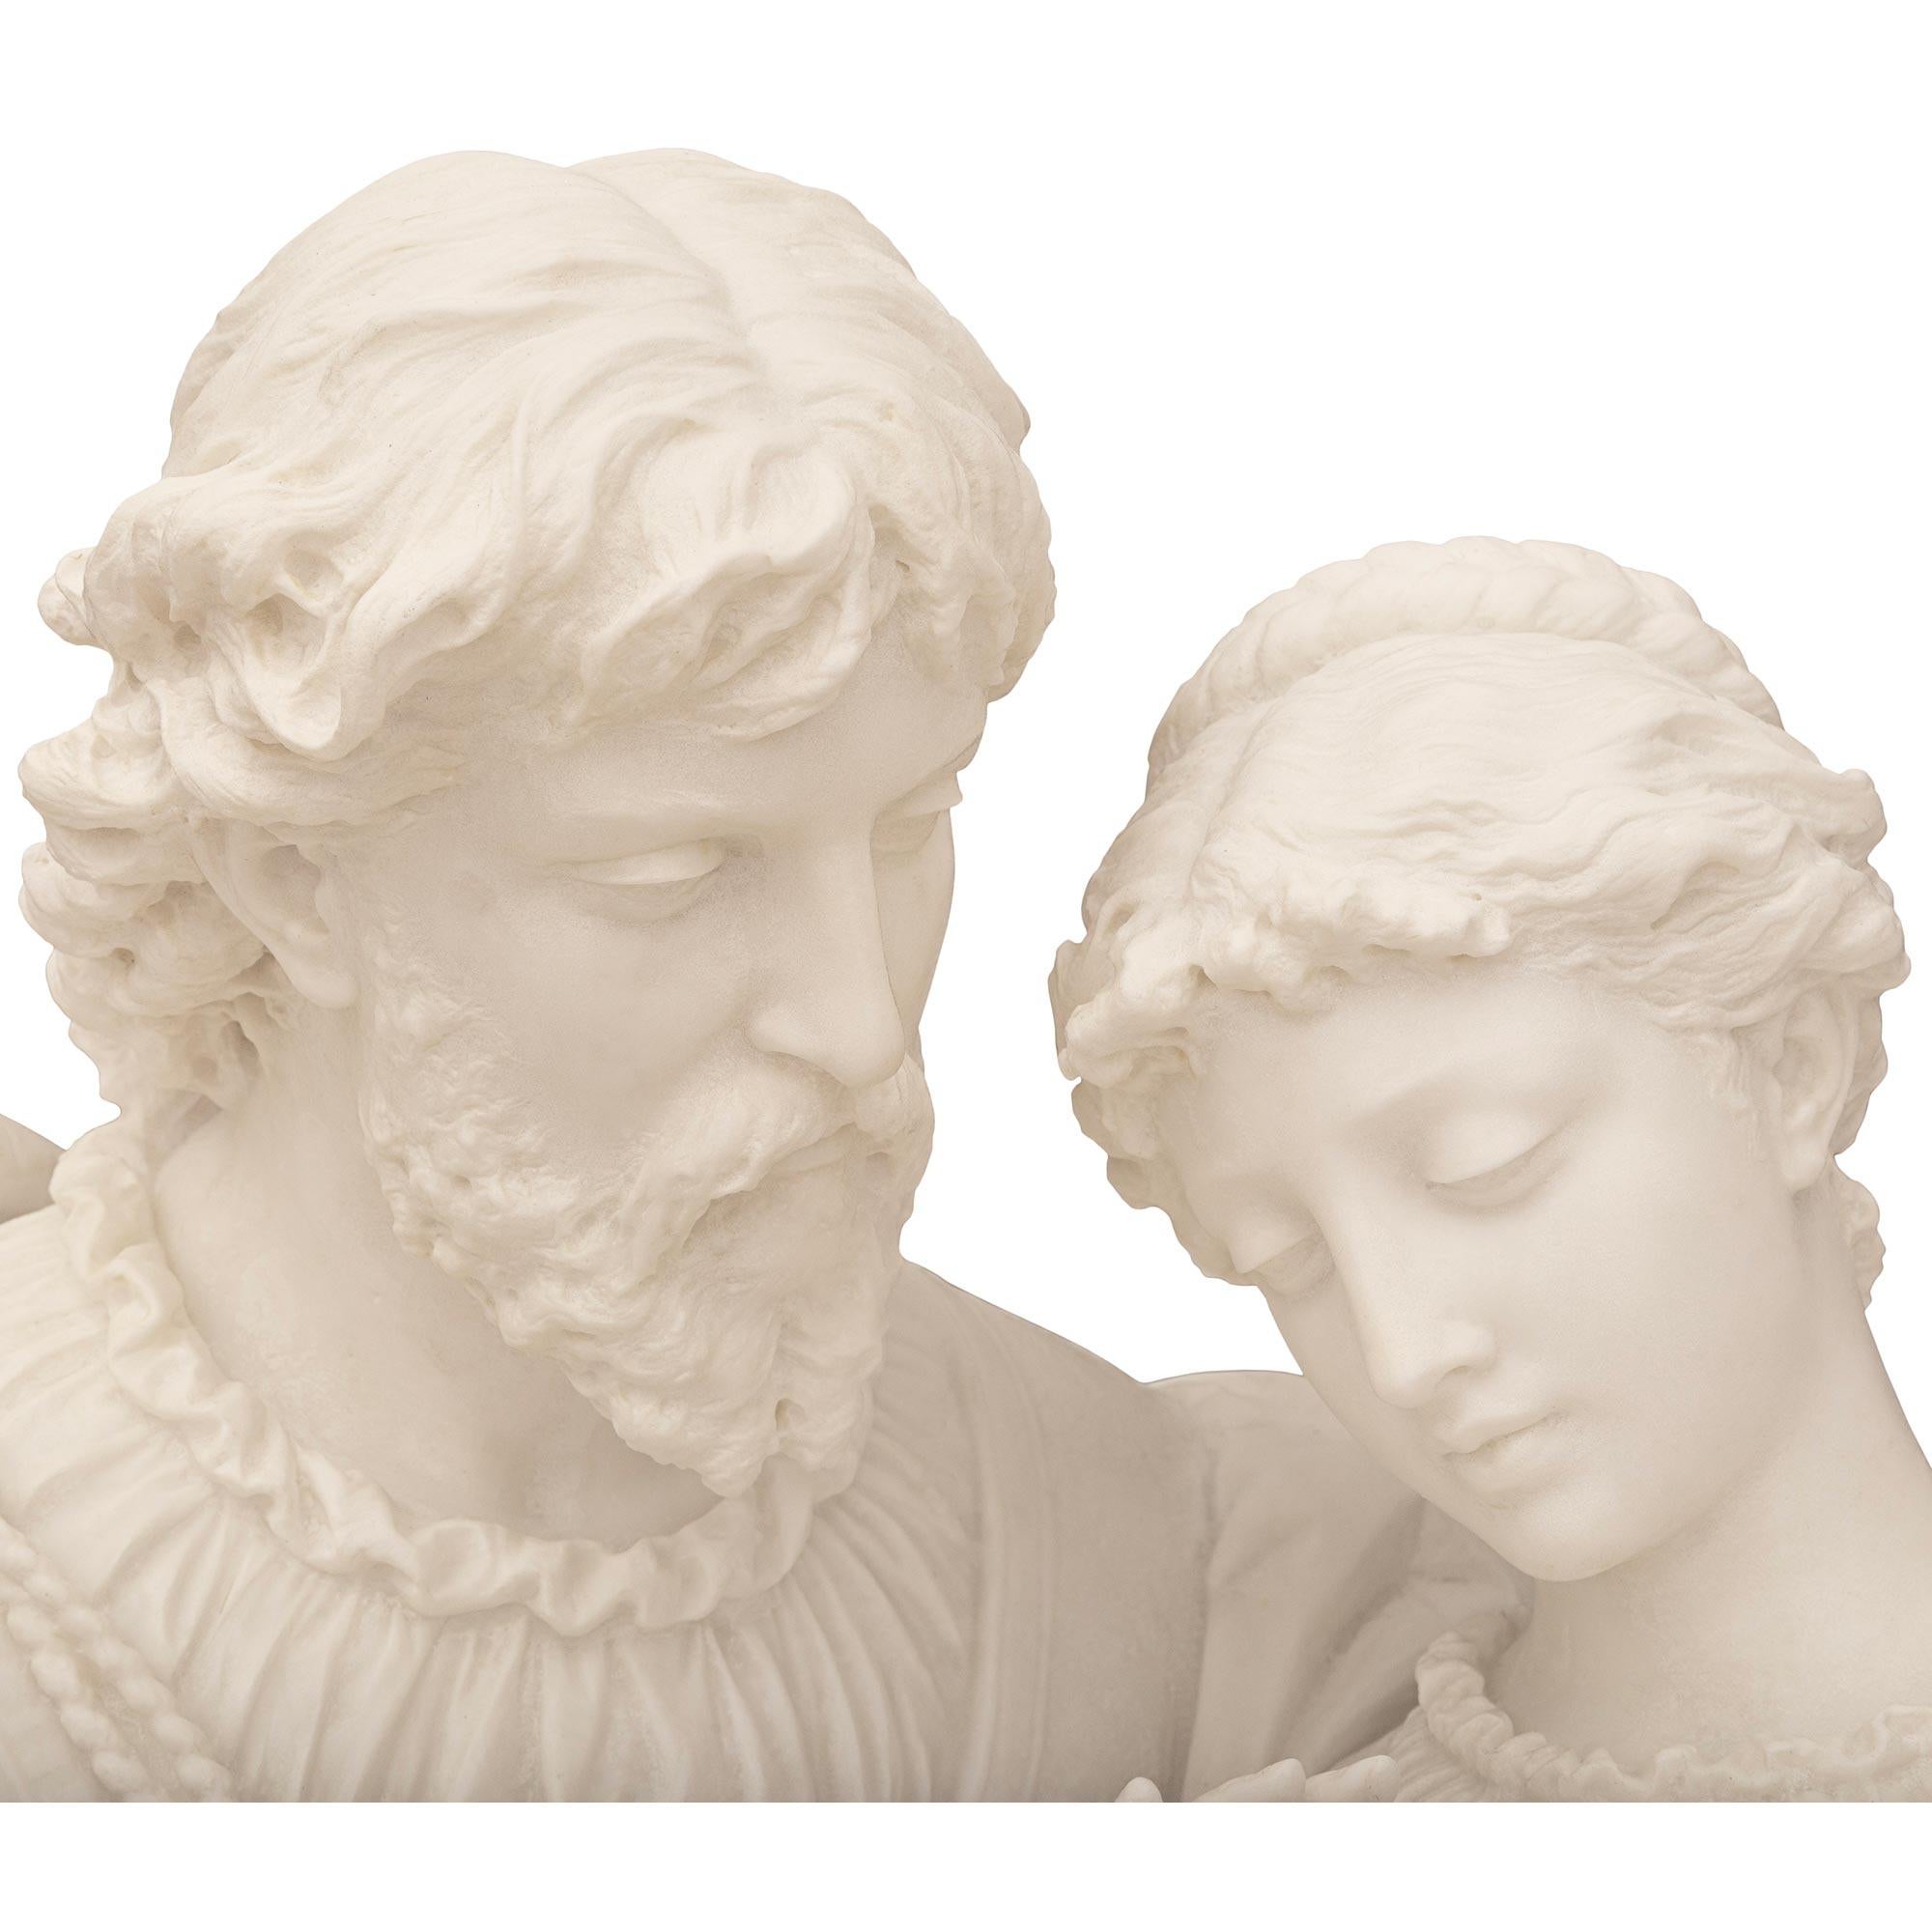 Eine beeindruckende und hochwertige italienische Marmorstatue aus weißem Carrara und Rosso Levanto aus dem 19. Jahrhundert, die Paolo und Francesca darstellt, signiert P. Romanelli. Diese exquisite Skulptur von Paolo und Francesca stellt eine Szene